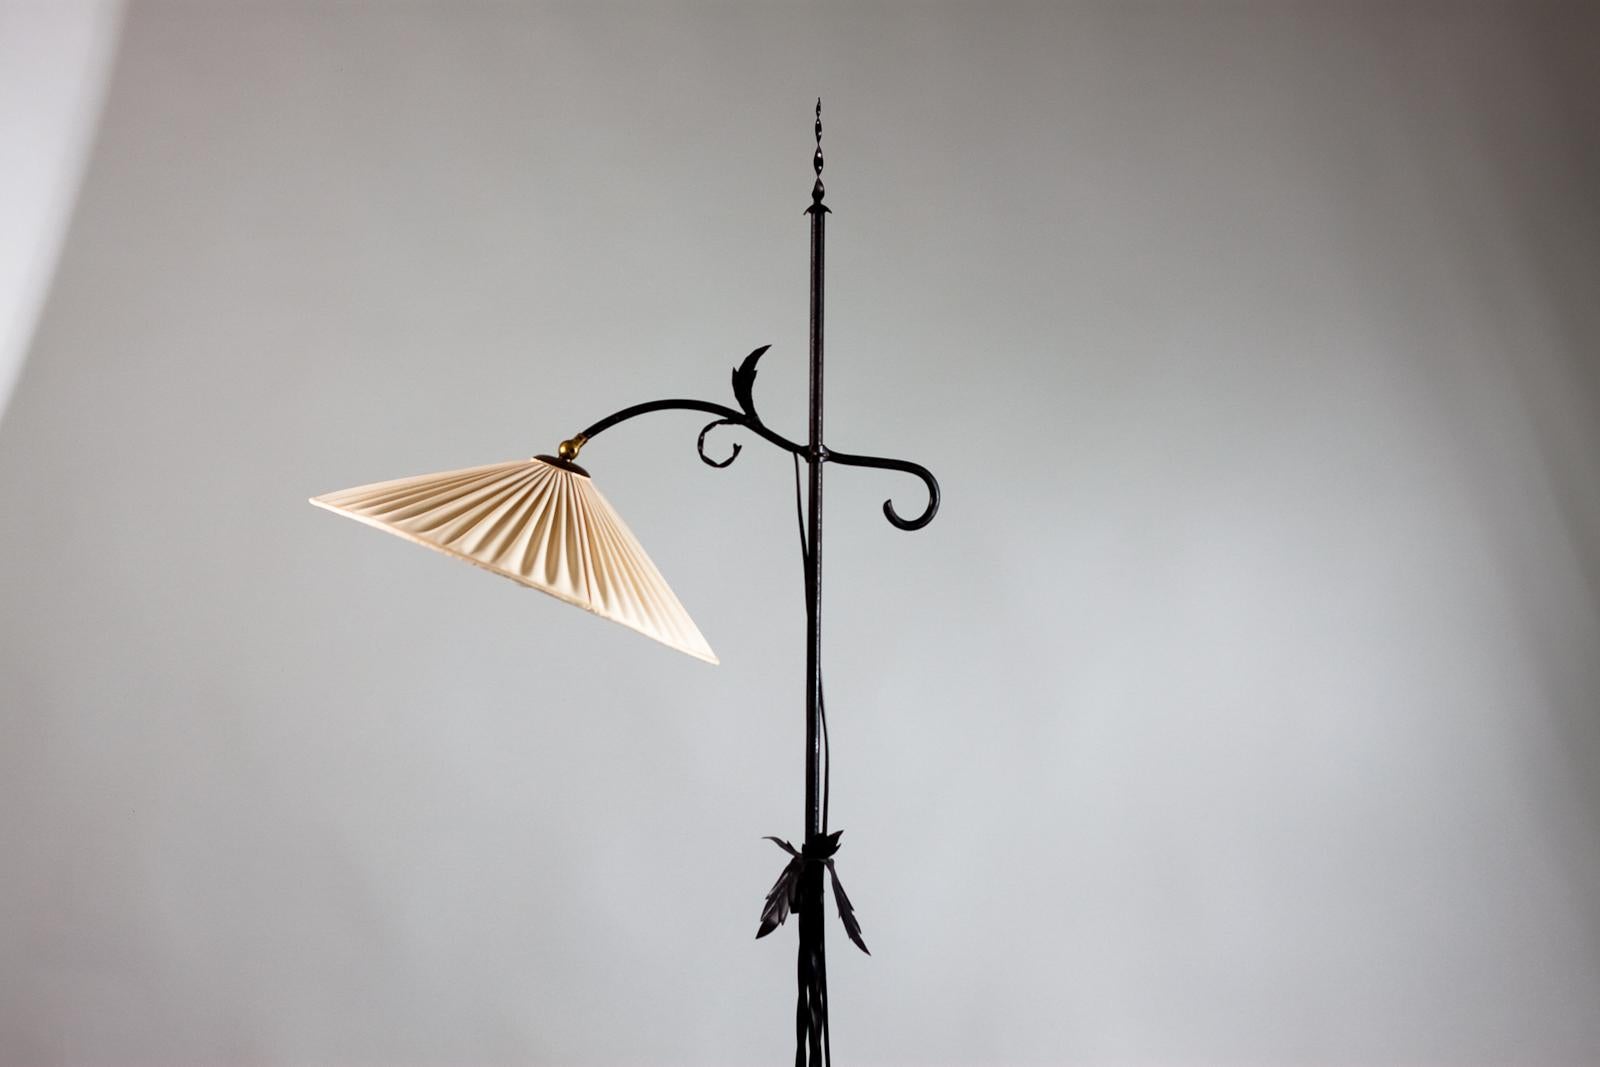 Magnifique lampadaire en fer forgé réalisé par Antti Hakkarainen pour Taidetakomo Hakkarainen dans les années 1930, Finlande. Le lampadaire est réglable en hauteur. 
La beauté réside dans les détails de la lampe. La lampe possède un abat-jour